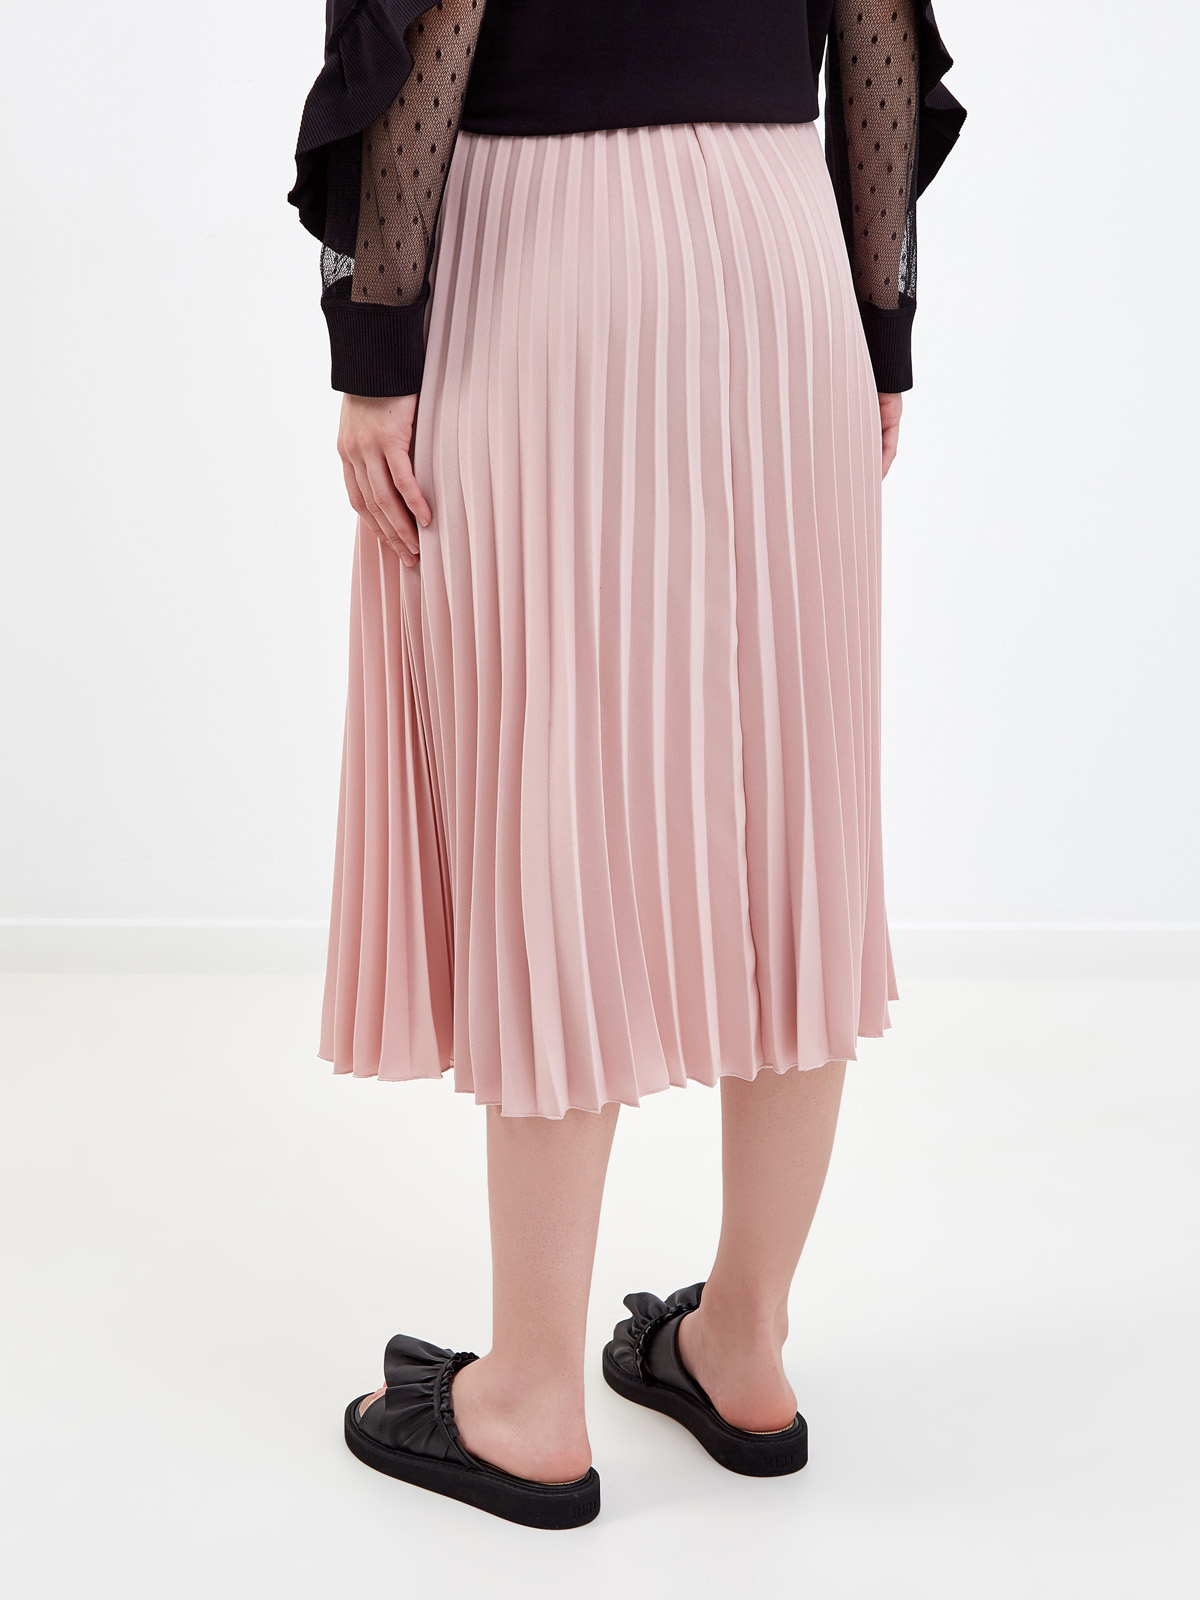 Свободная юбка-плиссе из струящегося крепа REDVALENTINO, цвет розовый, размер M;L;S - фото 4